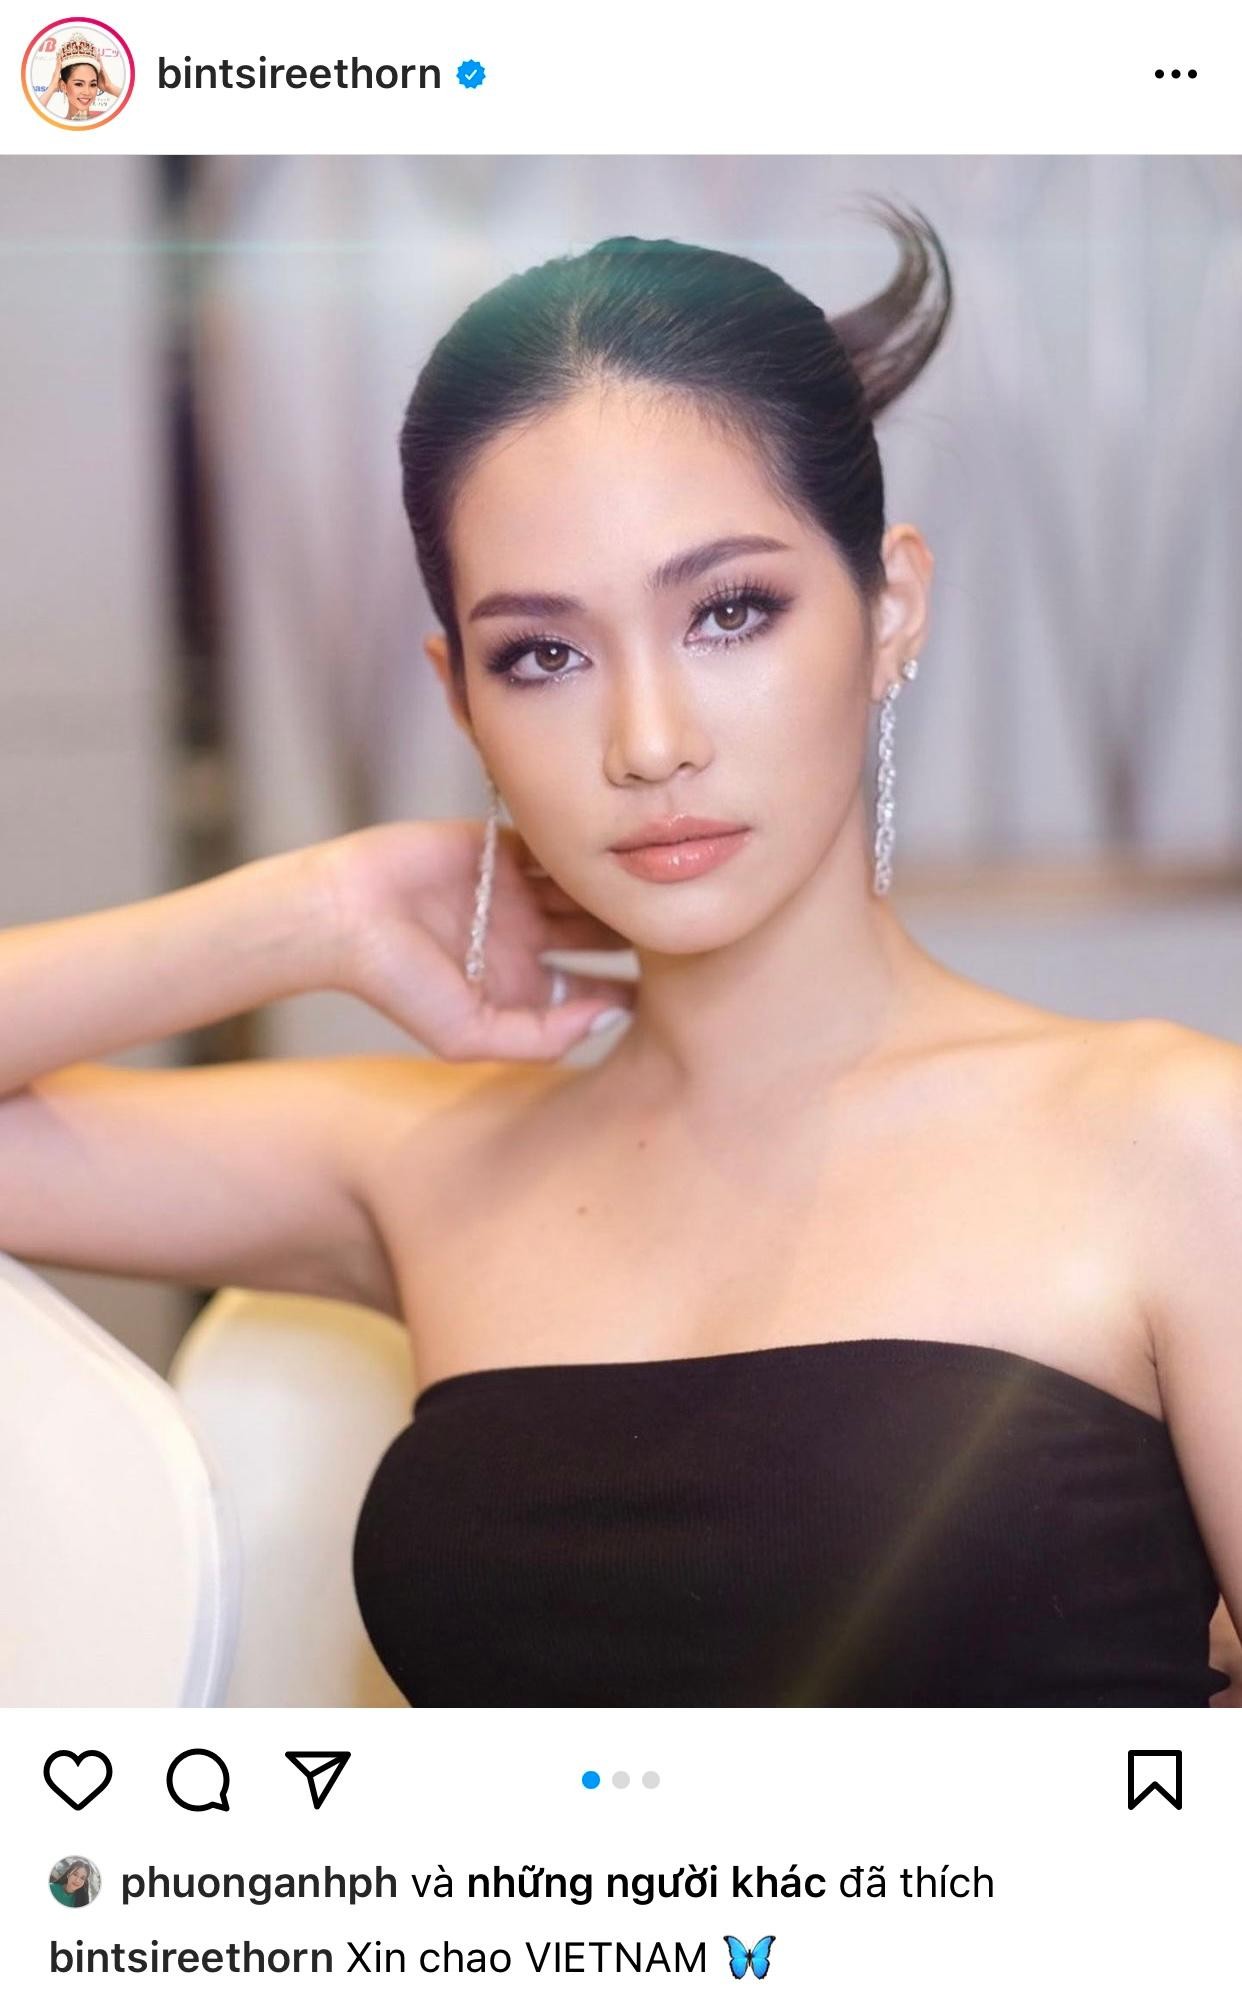 Đương kim Hoa hậu Quốc tế hé lộ kế hoạch tới Việt Nam, sẽ hội ngộ Á hậu Phương Anh? ảnh 1